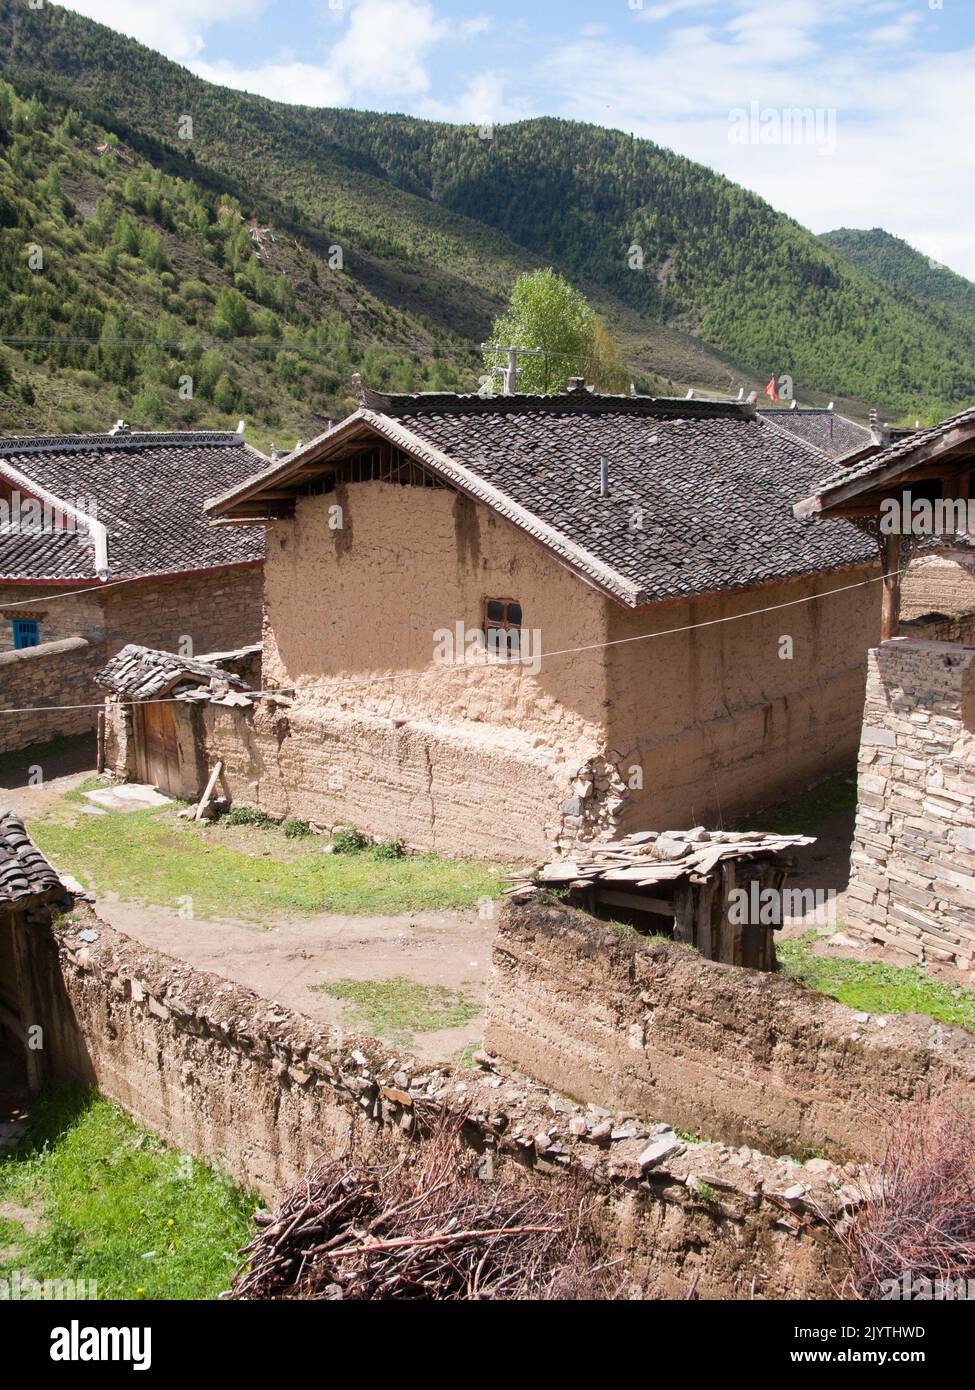 Case domestiche / abitazioni residenziali costruite in un piccolo villaggio (vissuto in etnia tibetana) sulle colline a est di Songpan antica città nella provincia settentrionale del Sichuan, Cina. PRC. (126) Foto Stock